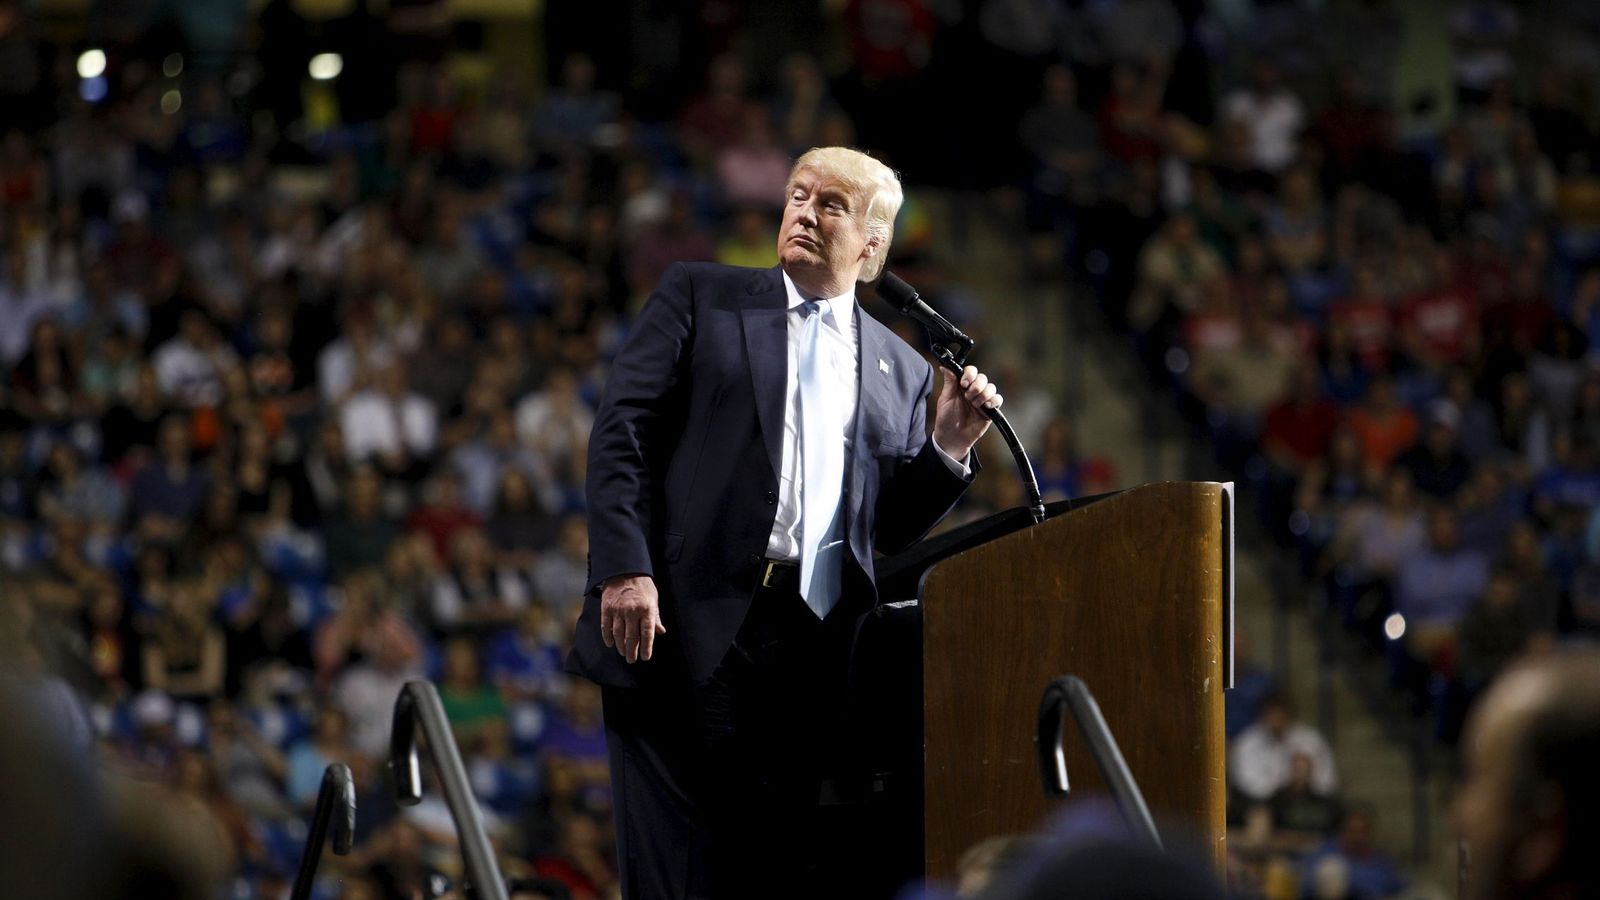 Foto: El candidato a la nominación republicana Donald Trump durante un mitin en Fayetteville, Carolina del Norte, el 9 de marzo de 2016. (Reuters)  